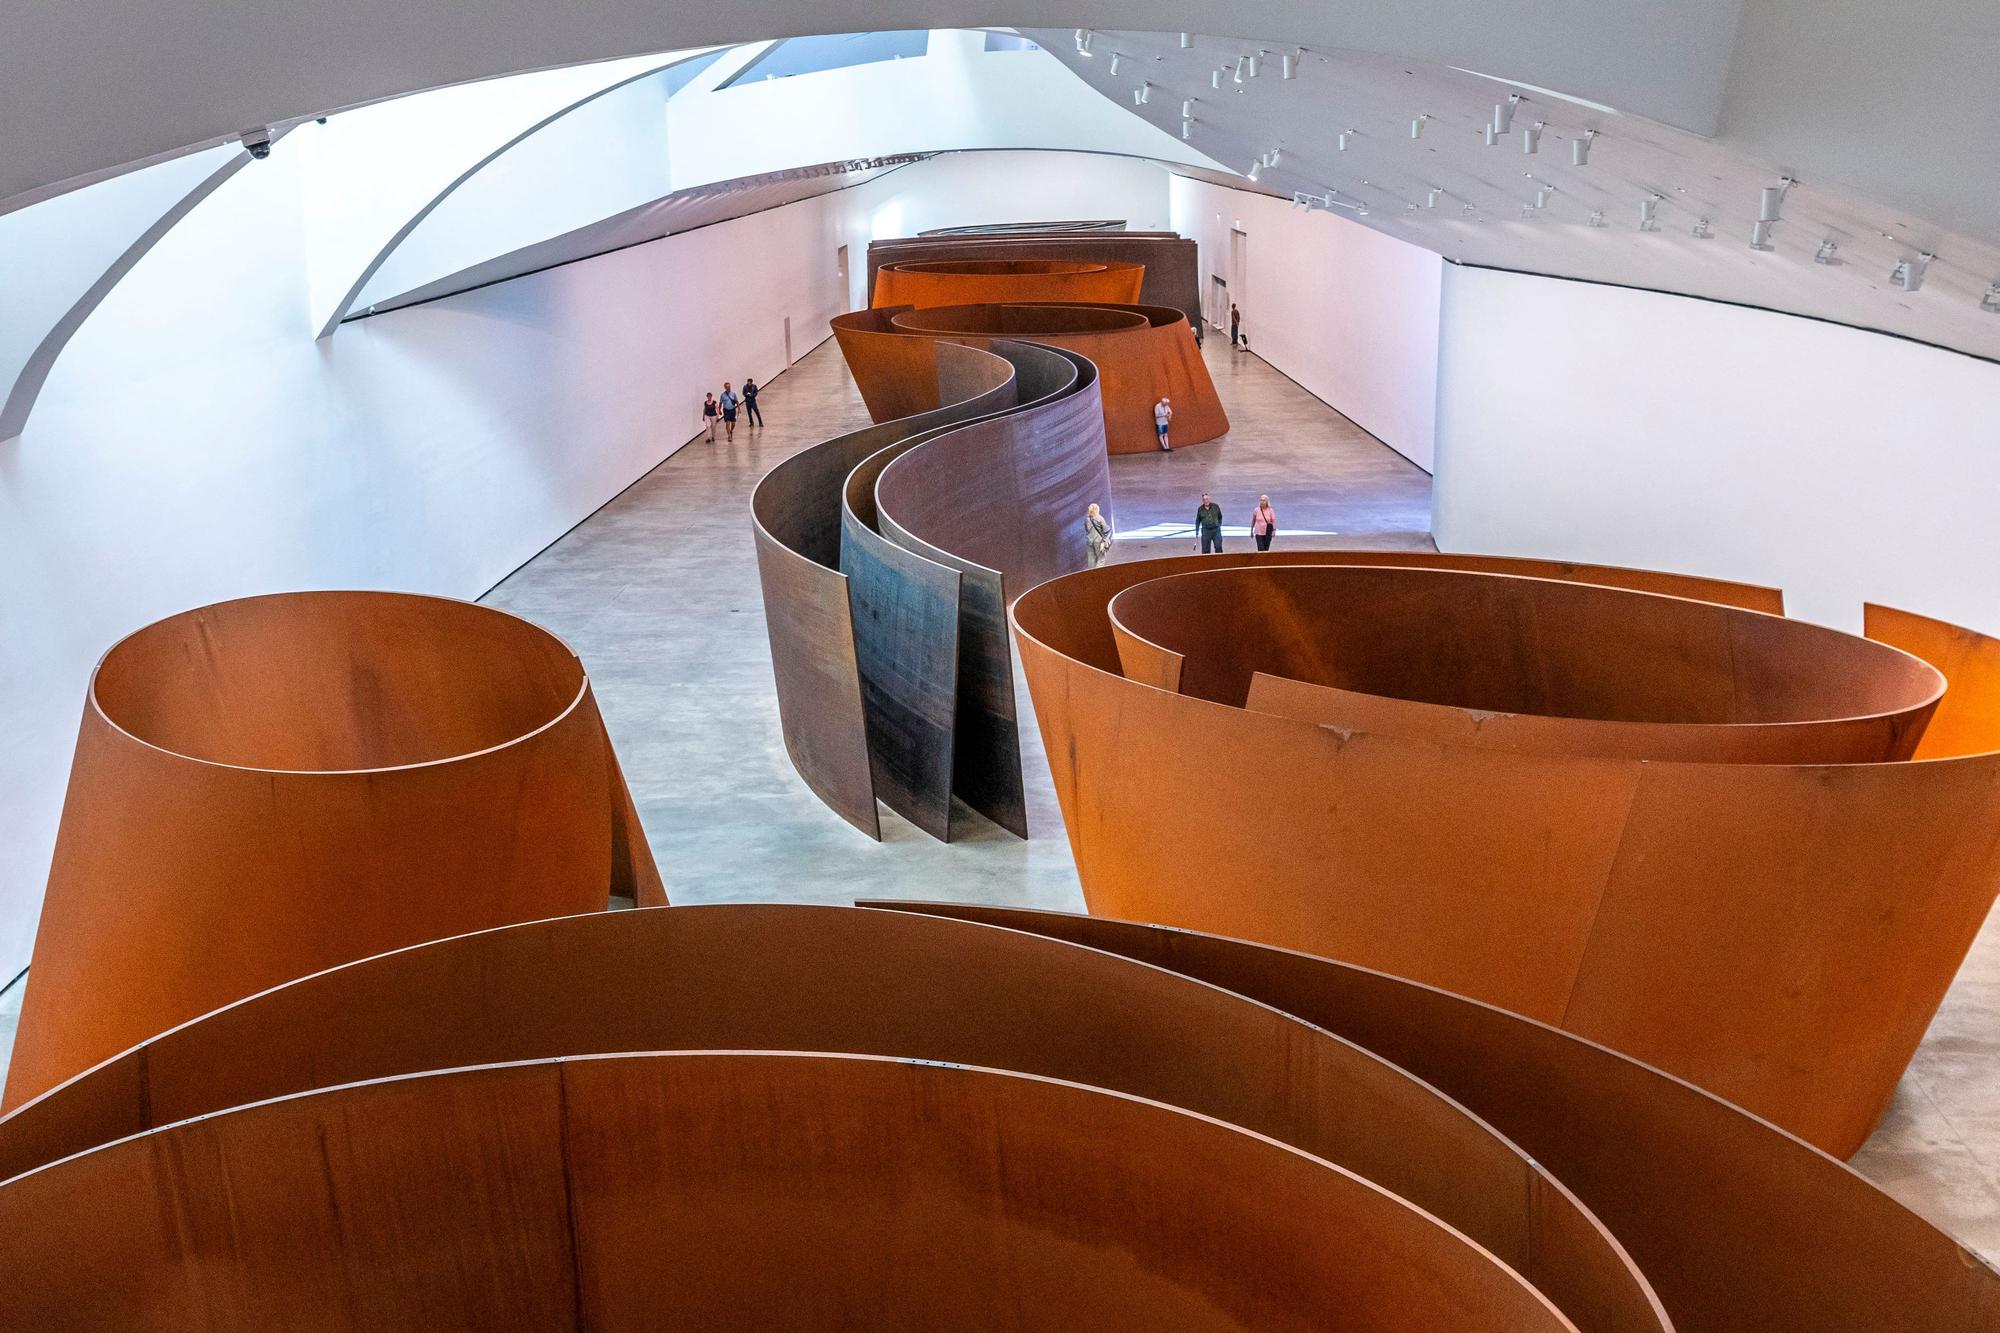 "La matière du temps (The Matter of Time)", oeuvre de Richard Serra exposée au Musée Guggenheim à Bilbao. [Hemis via AFP - Stéphane Bouilland]